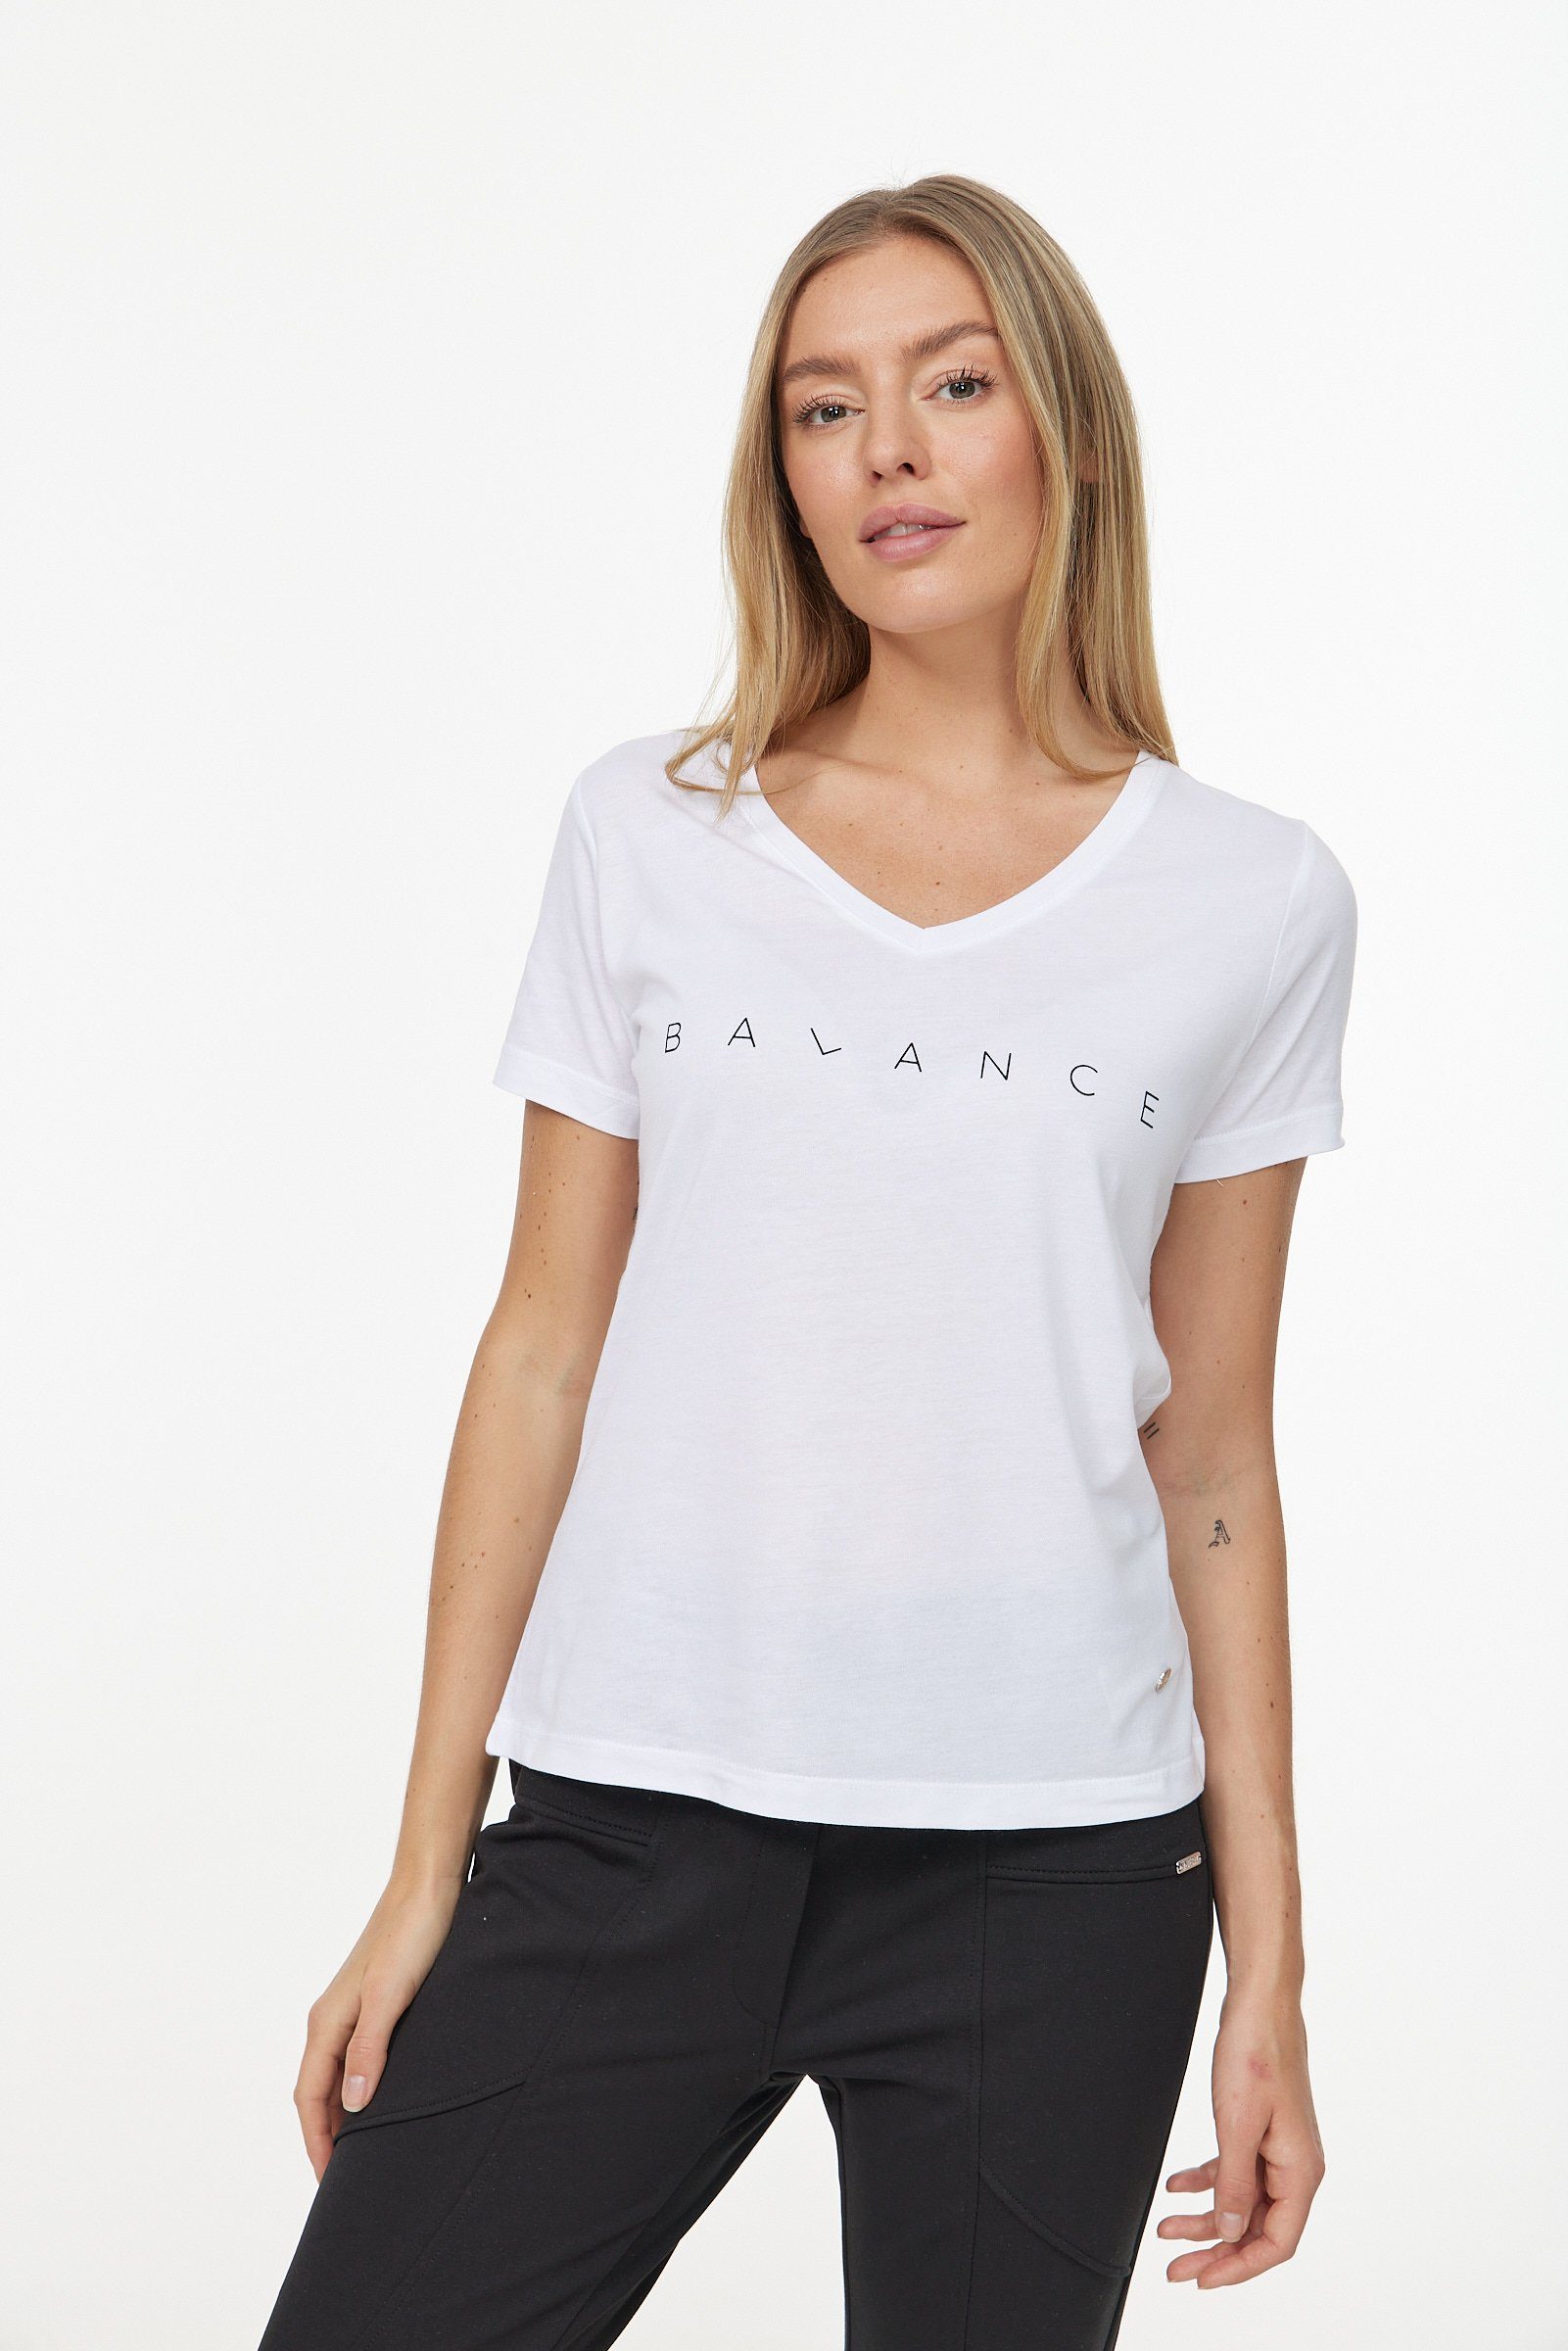 schlichtem T-Shirt in Design weiß-schwarz Decay